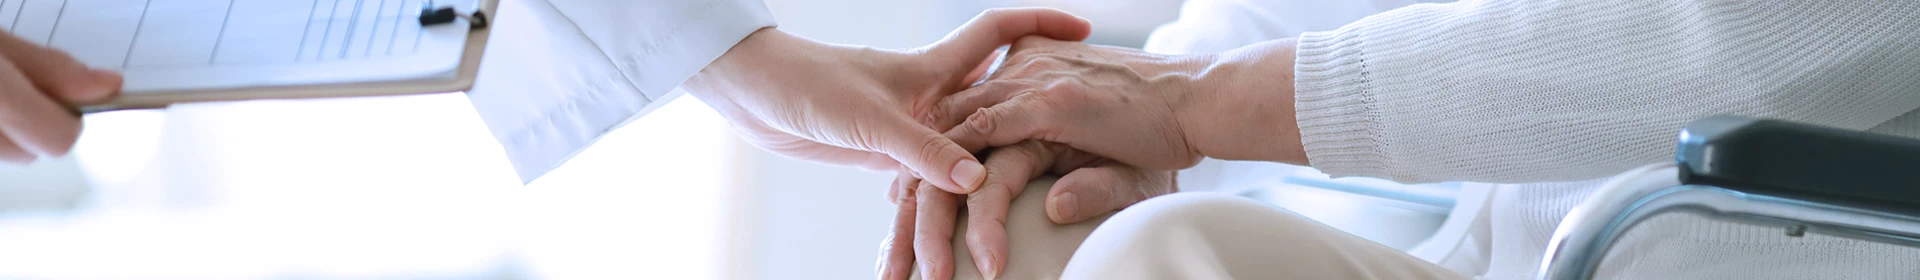 Trzymanie dłoni starszej osoby